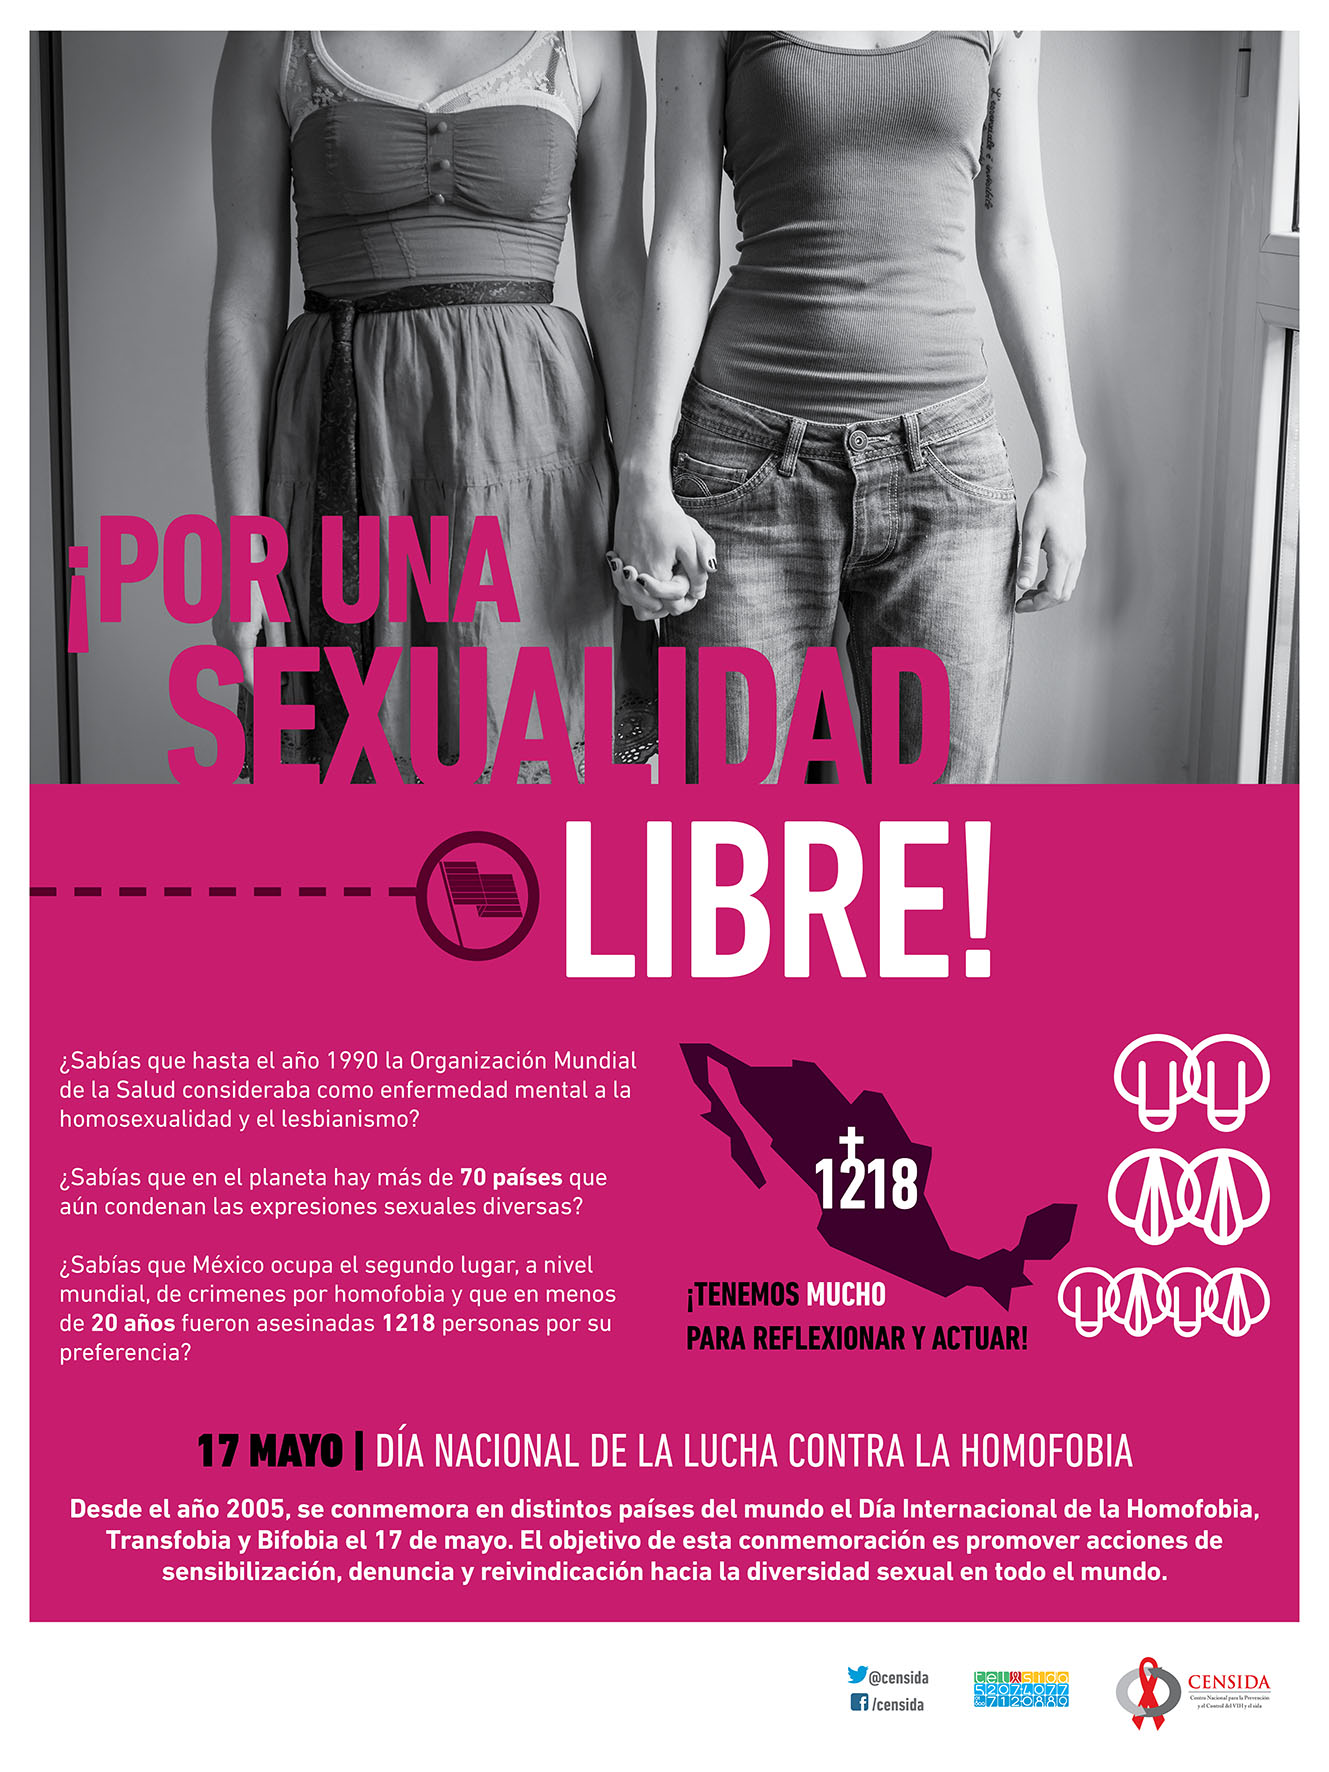 /cms/uploads/image/file/286503/dia_contra_homofobia_-_cartel5.jpg